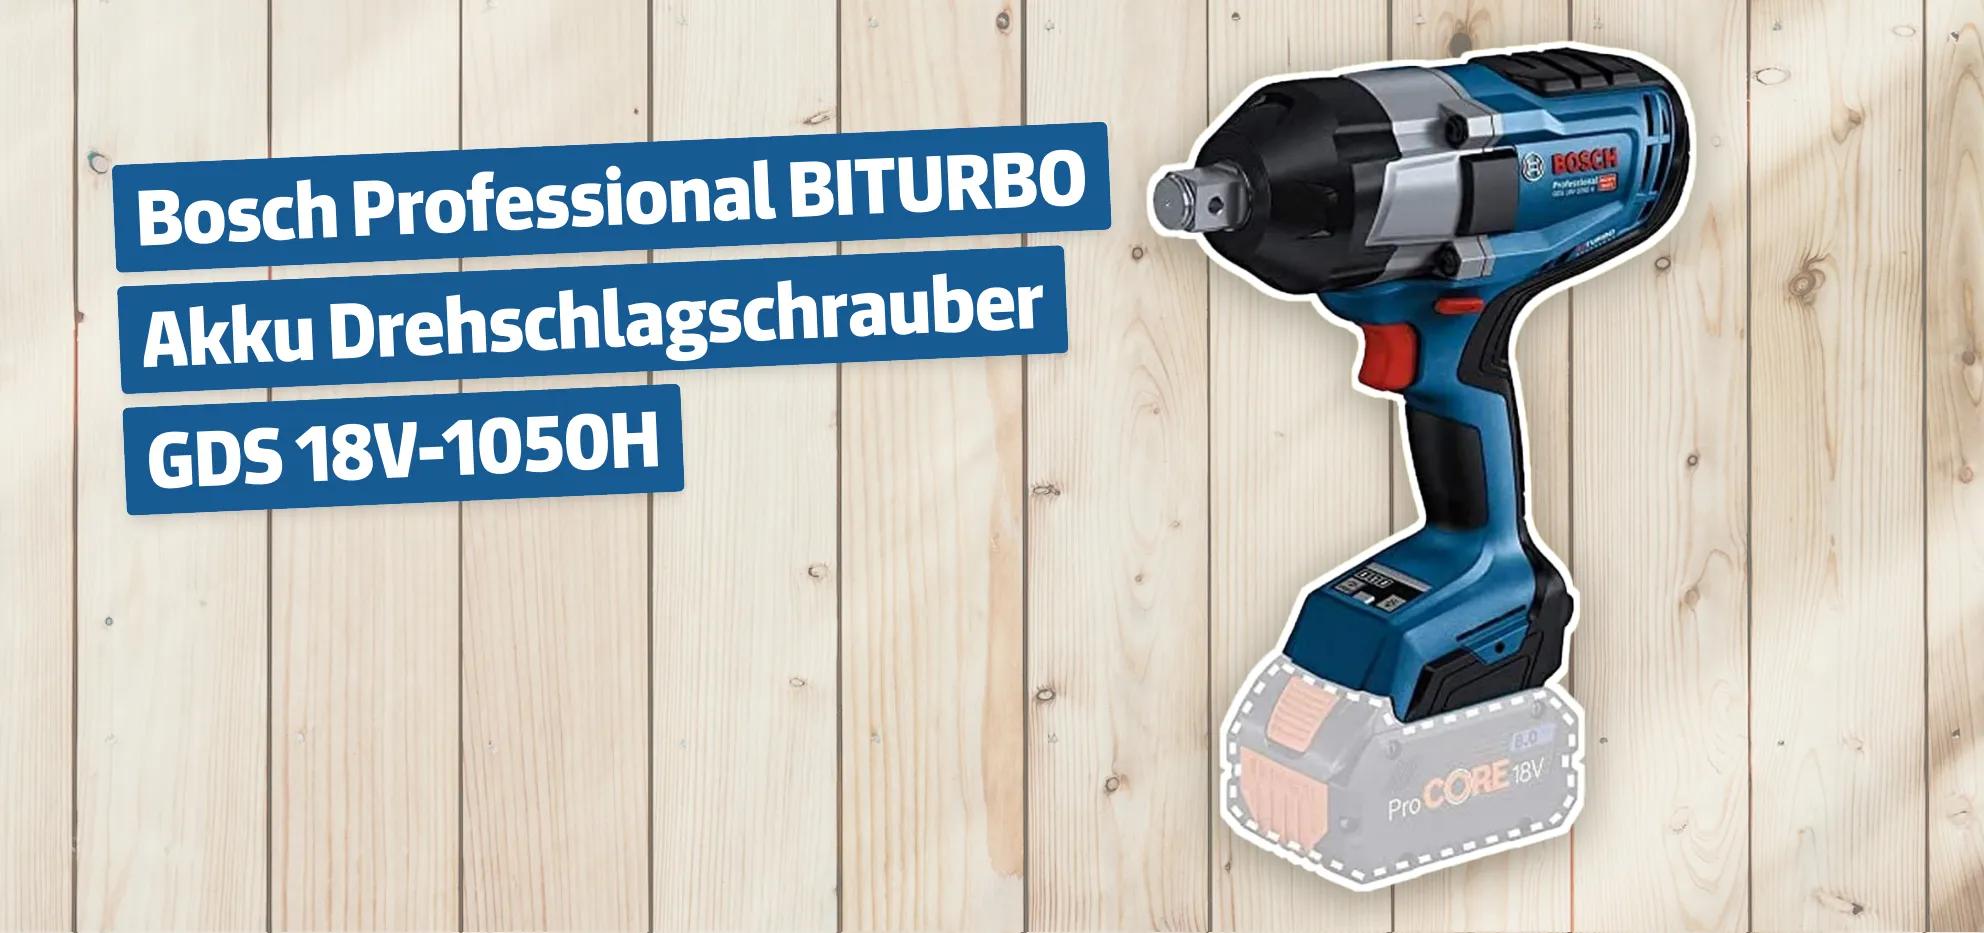 Bosch Professional BITURBO Akku Drehschlagschrauber GDS 18V-1050H